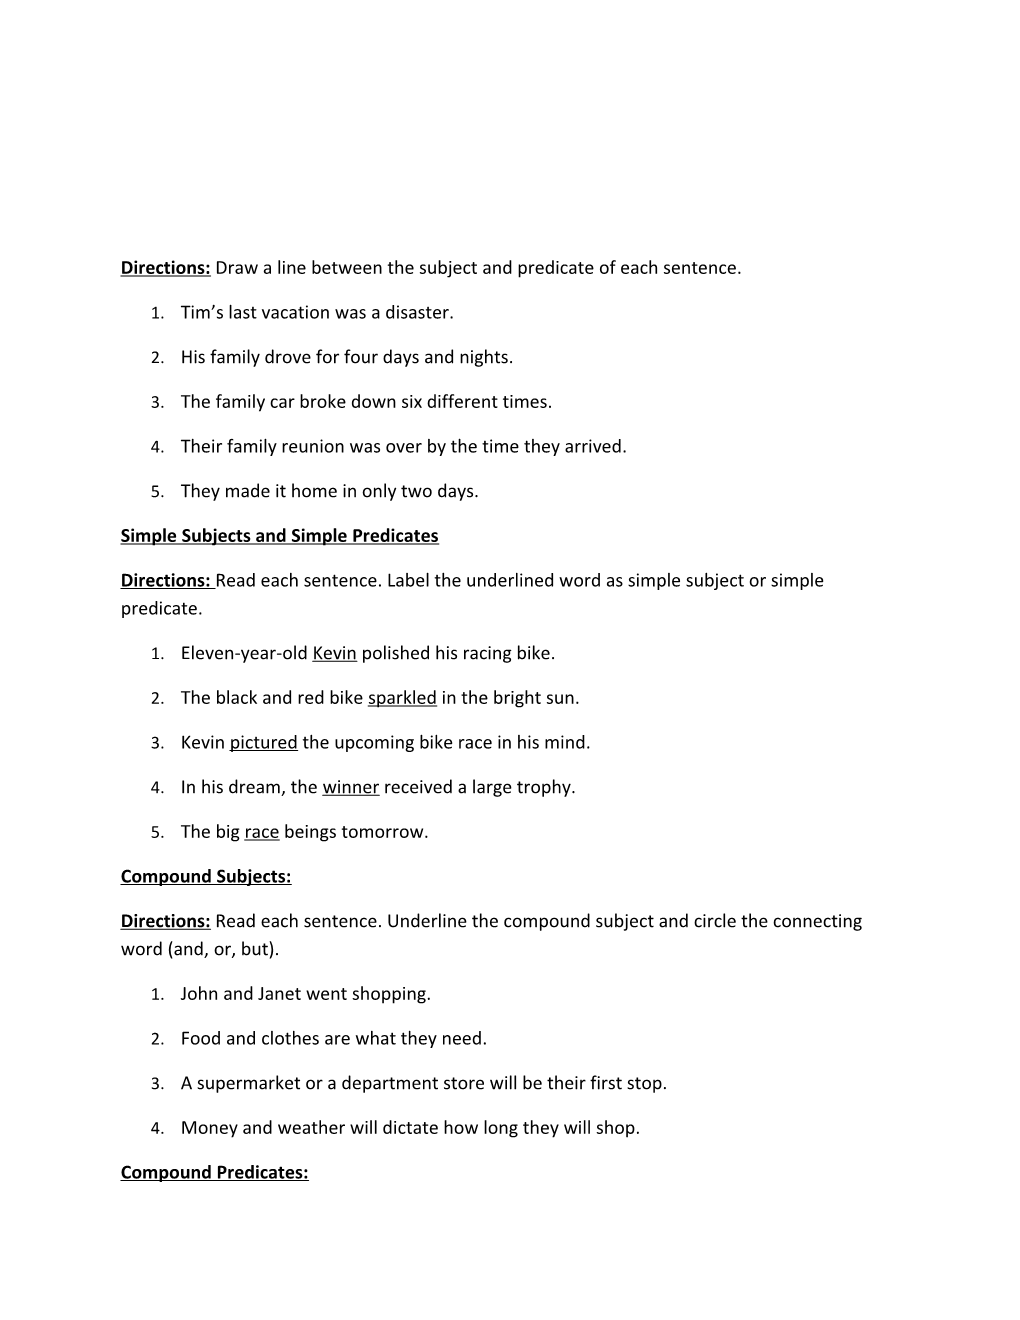 Unit 1 Study Guide(P. 41-51)